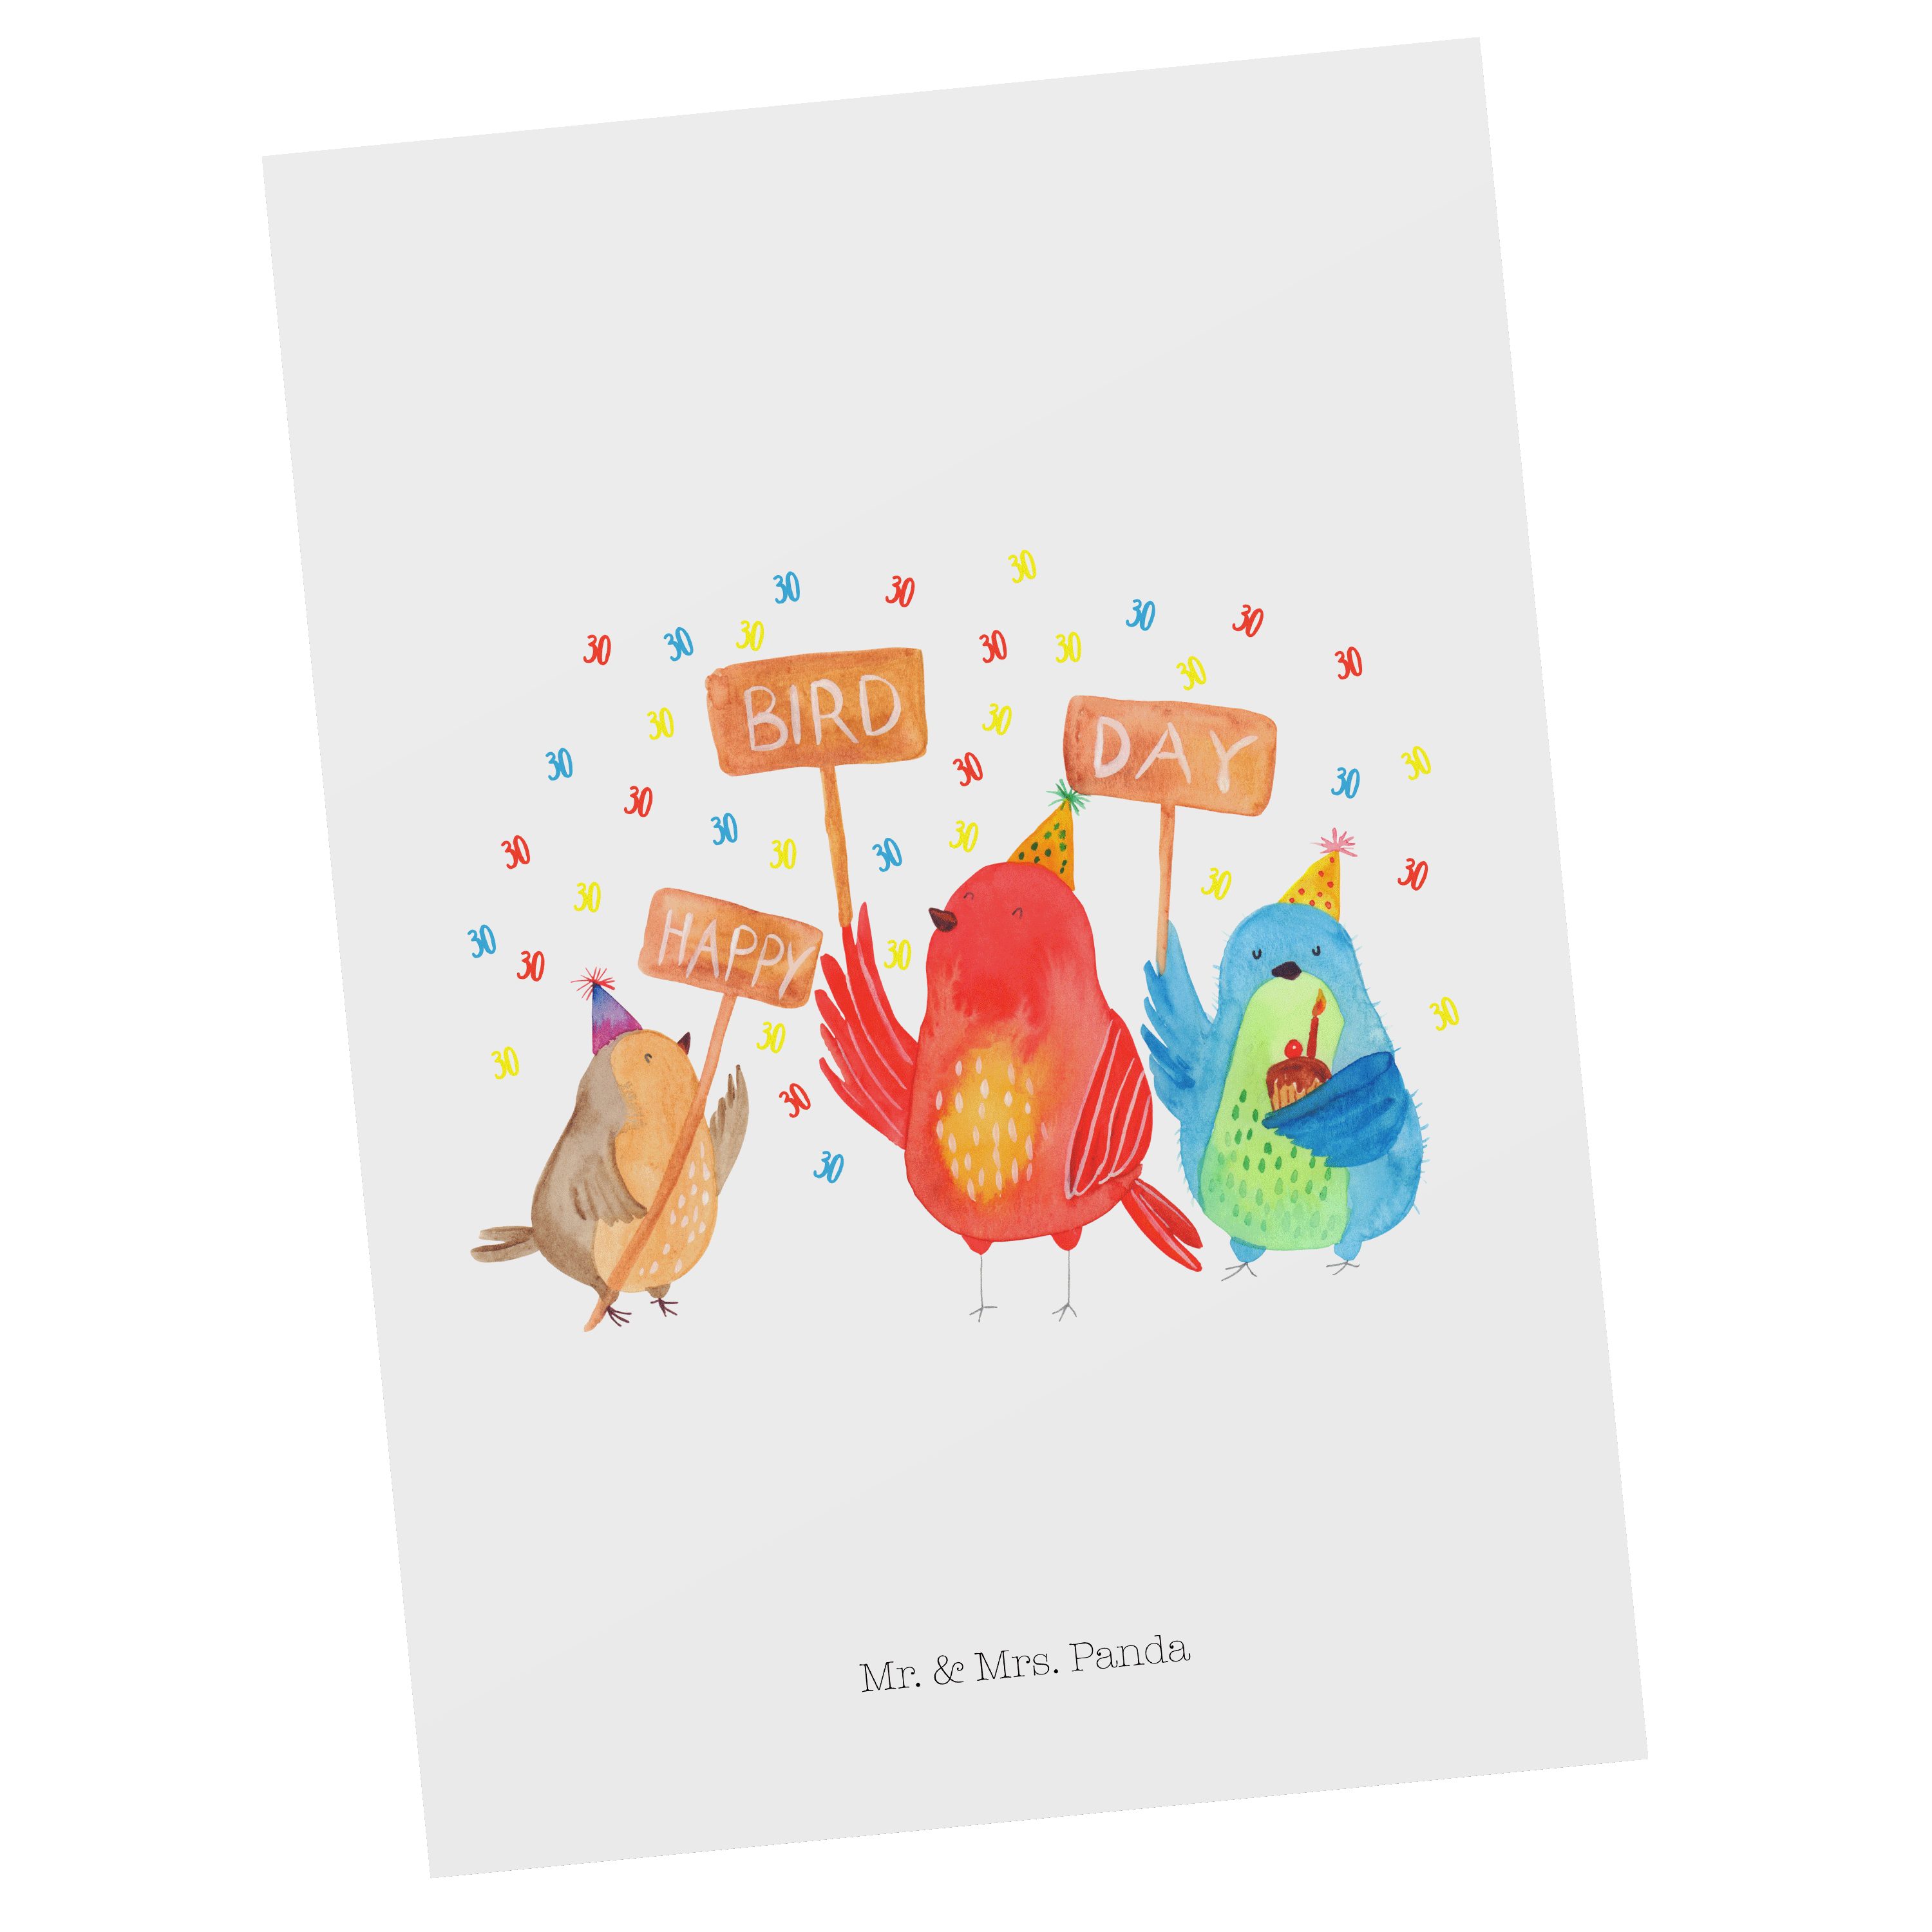 Mr. & Mrs. Panda Postkarte 30. Geburtstag Happy Bird Day - Weiß - Geschenk, Grußkarte, Feiern, f